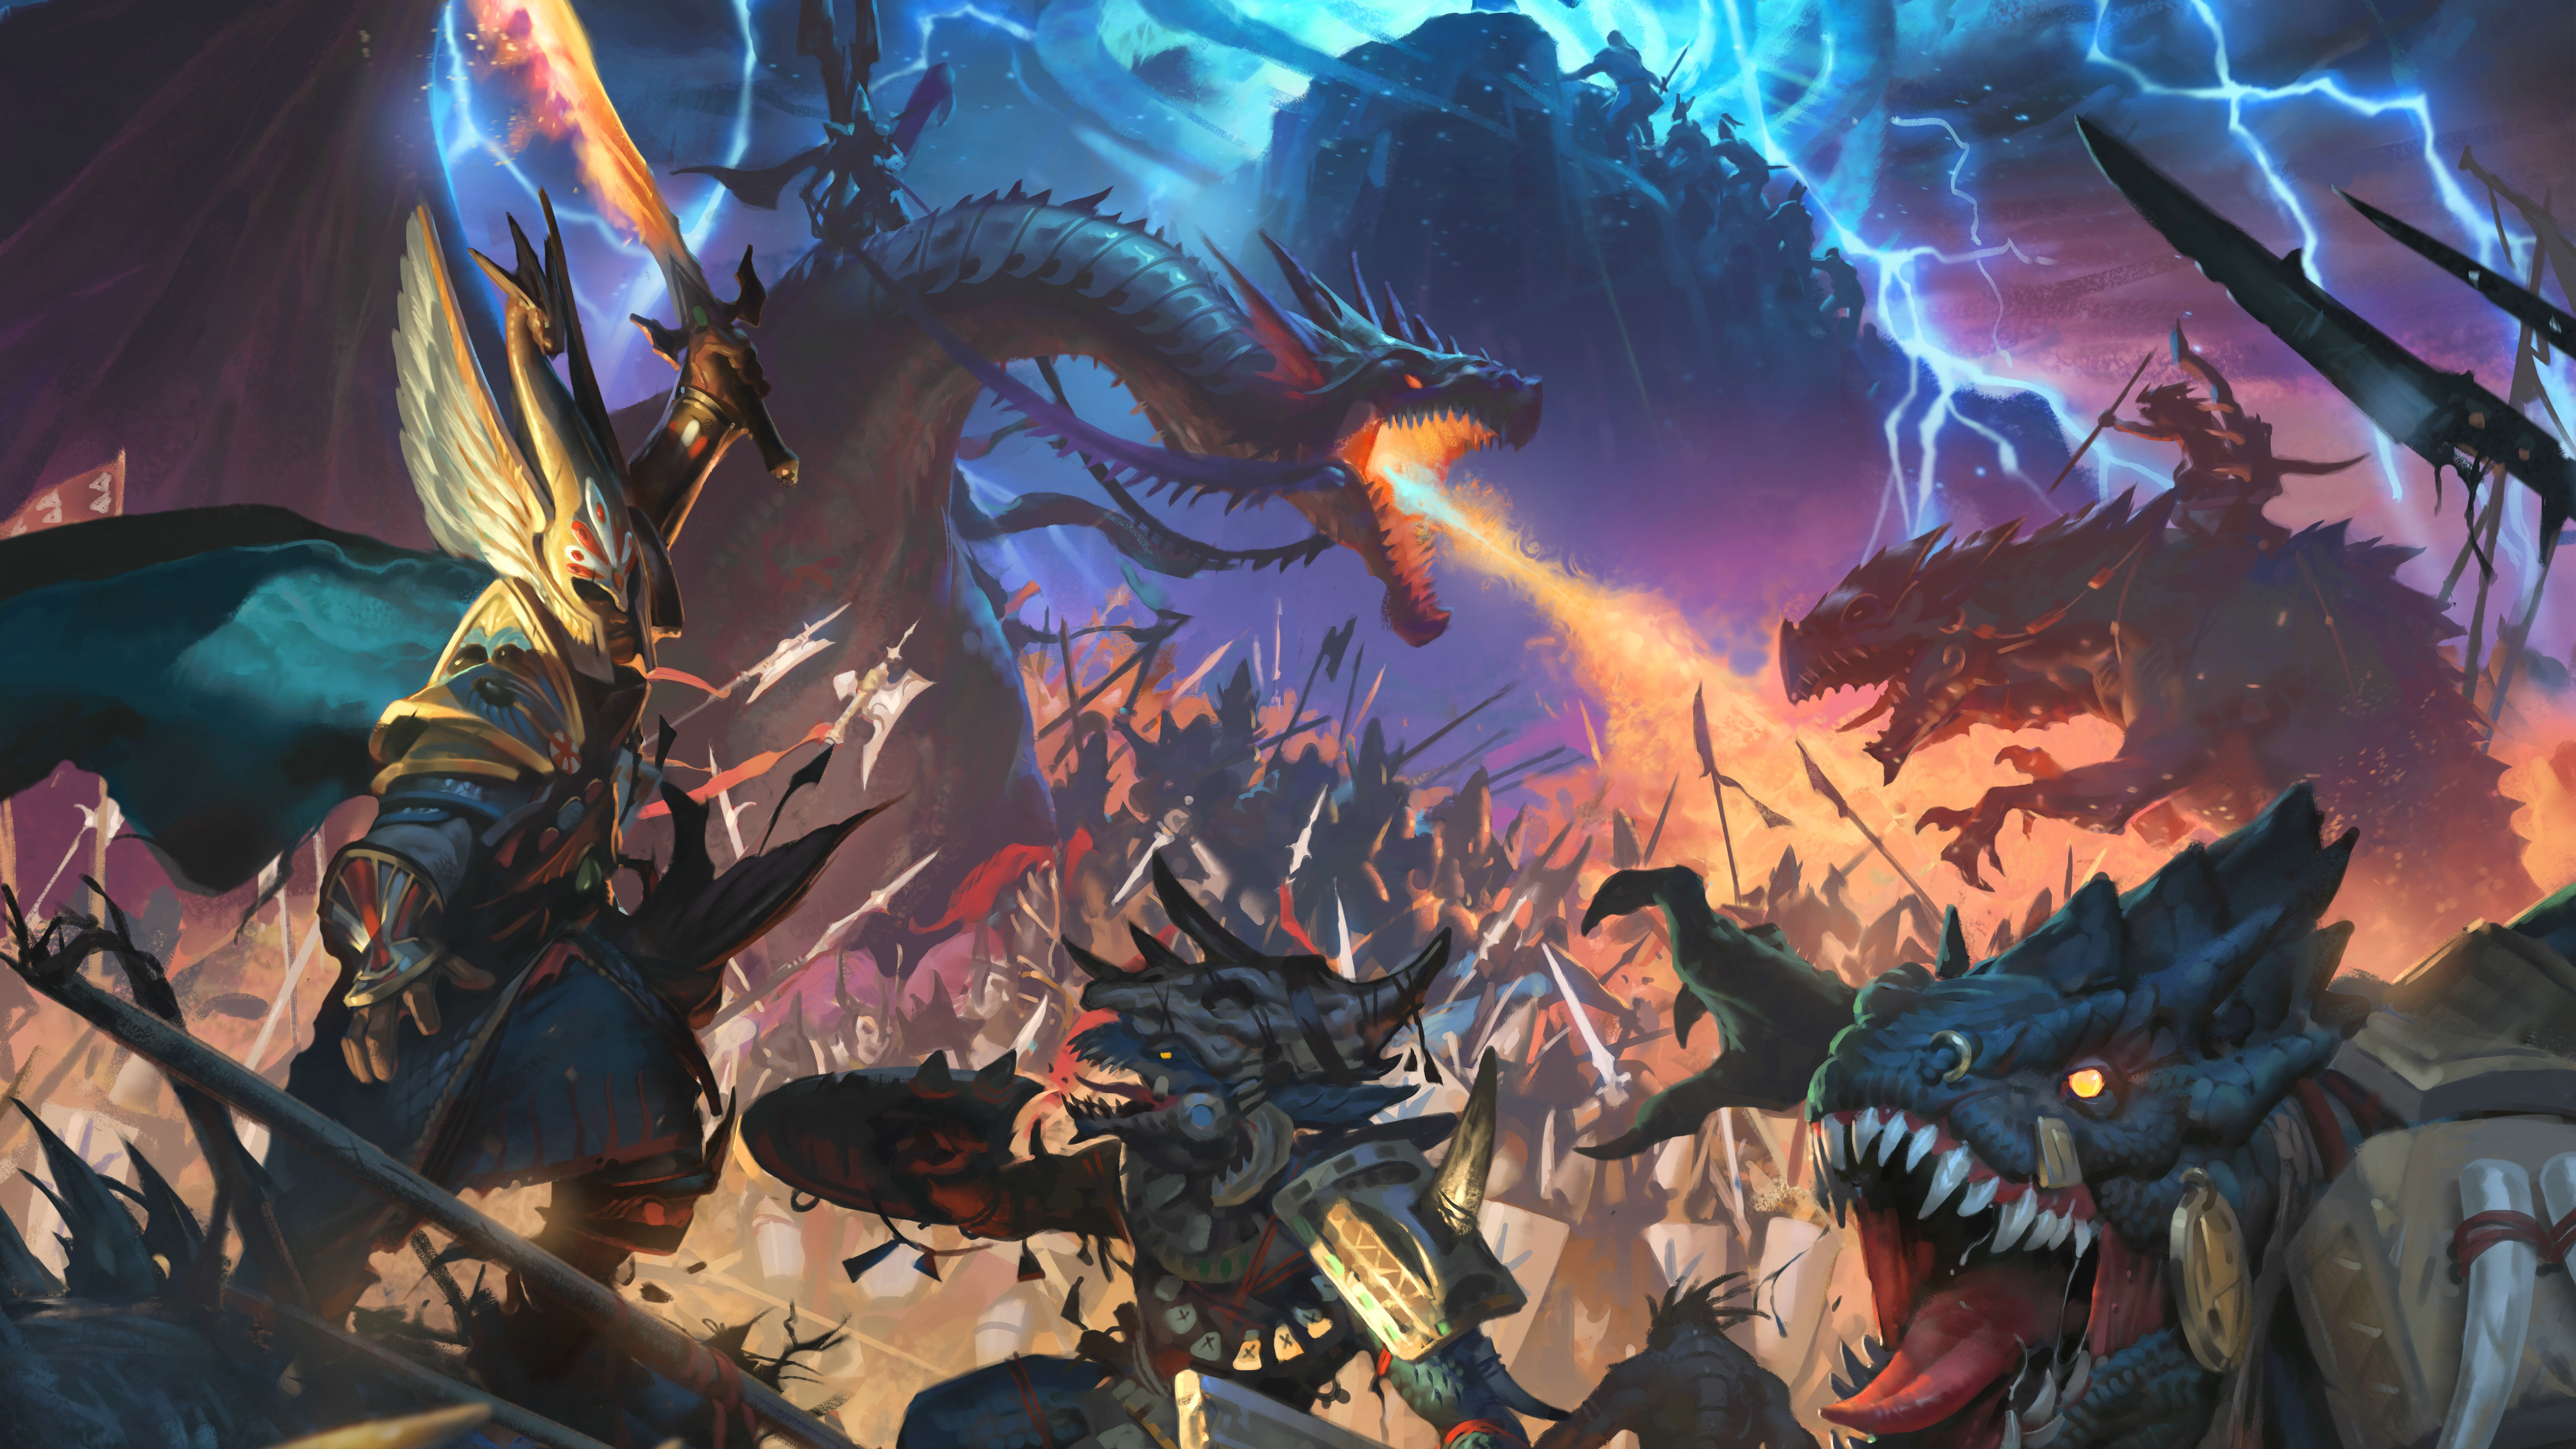 Descargar fondos de escritorio de Total War: Warhammer Ii HD